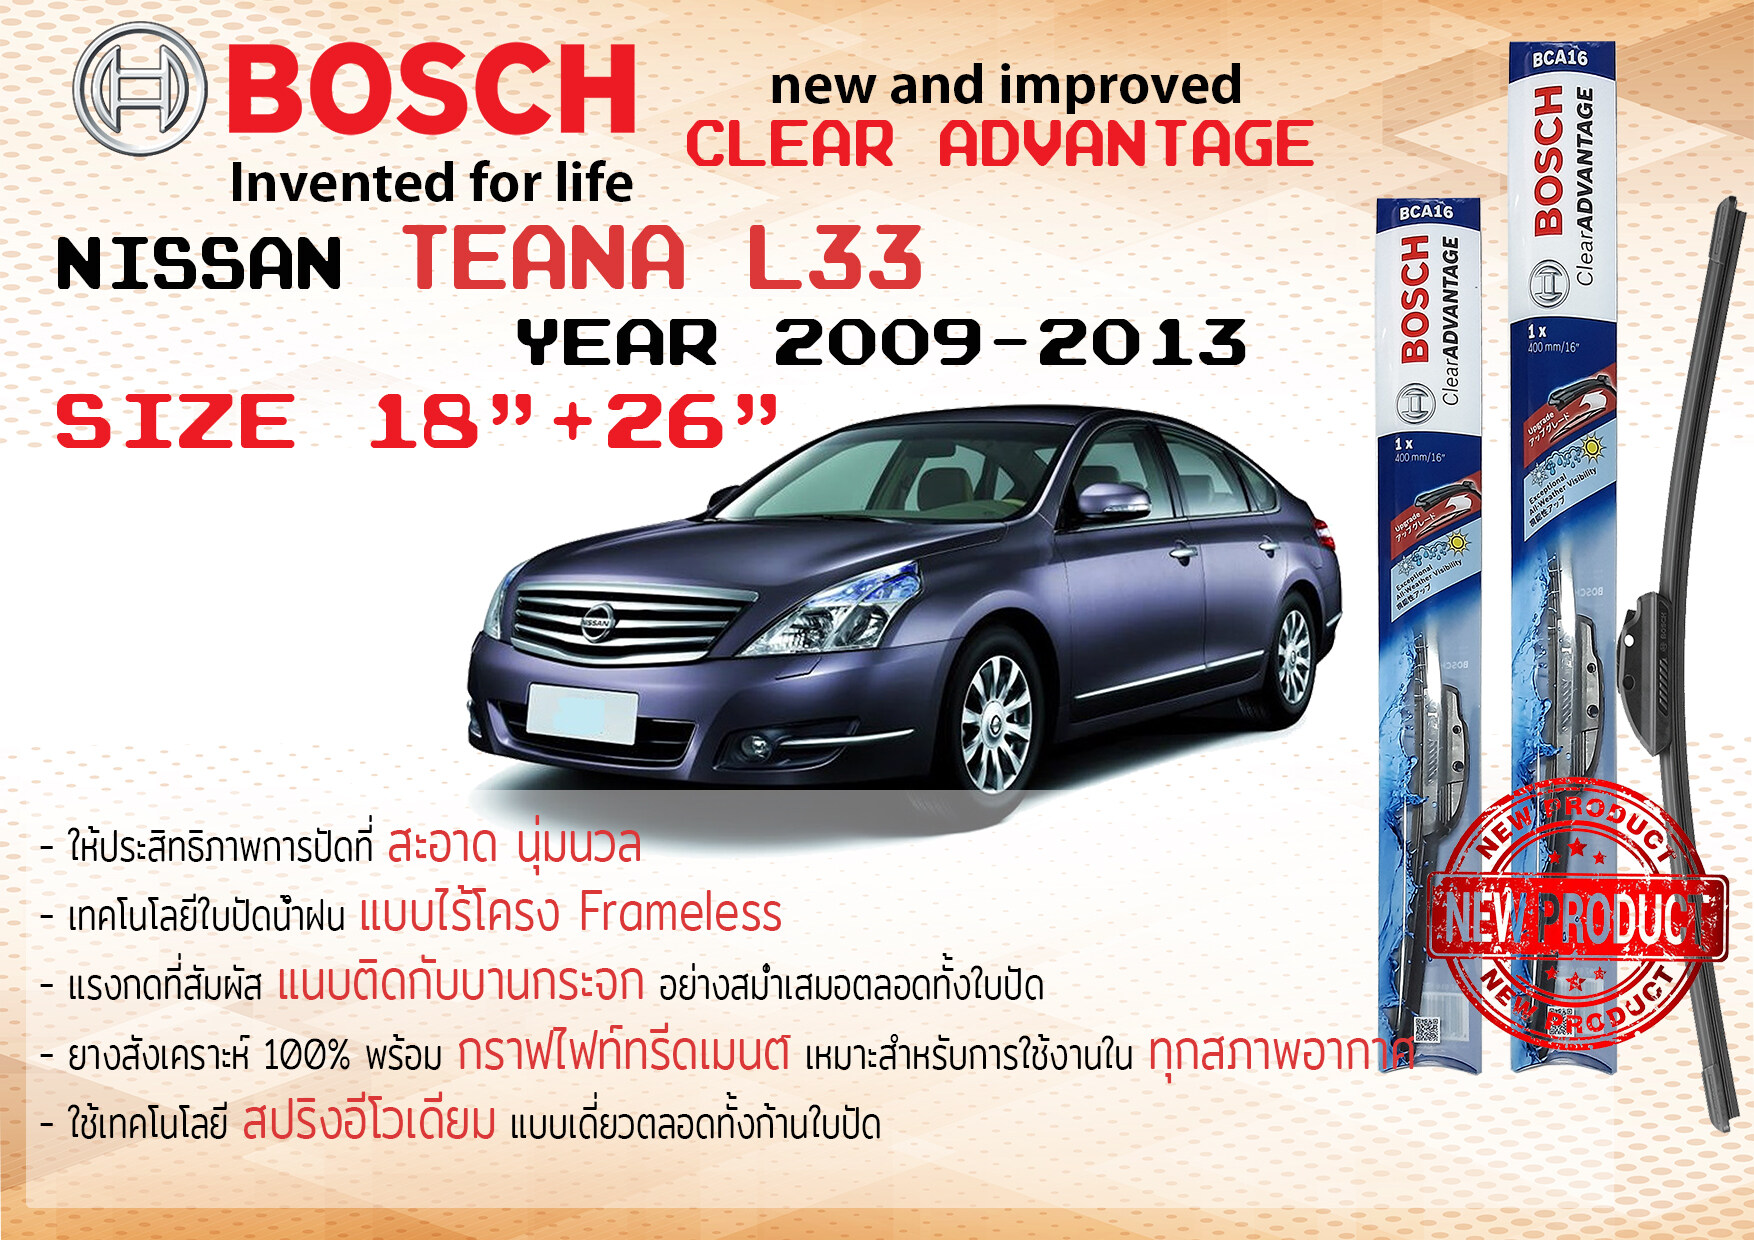 ใบปัดน้ำฝน คู่หน้า Bosch Clear Advantage frameless ก้านอ่อน ขนาด 18”+26” สำหรับรถ Nissan TEANA Gen 2 ปี 2009-2013 ปี 09,10,11,12,13 นิสสัน เทียนนา เทียนา เทียน่า ทนแสง UV